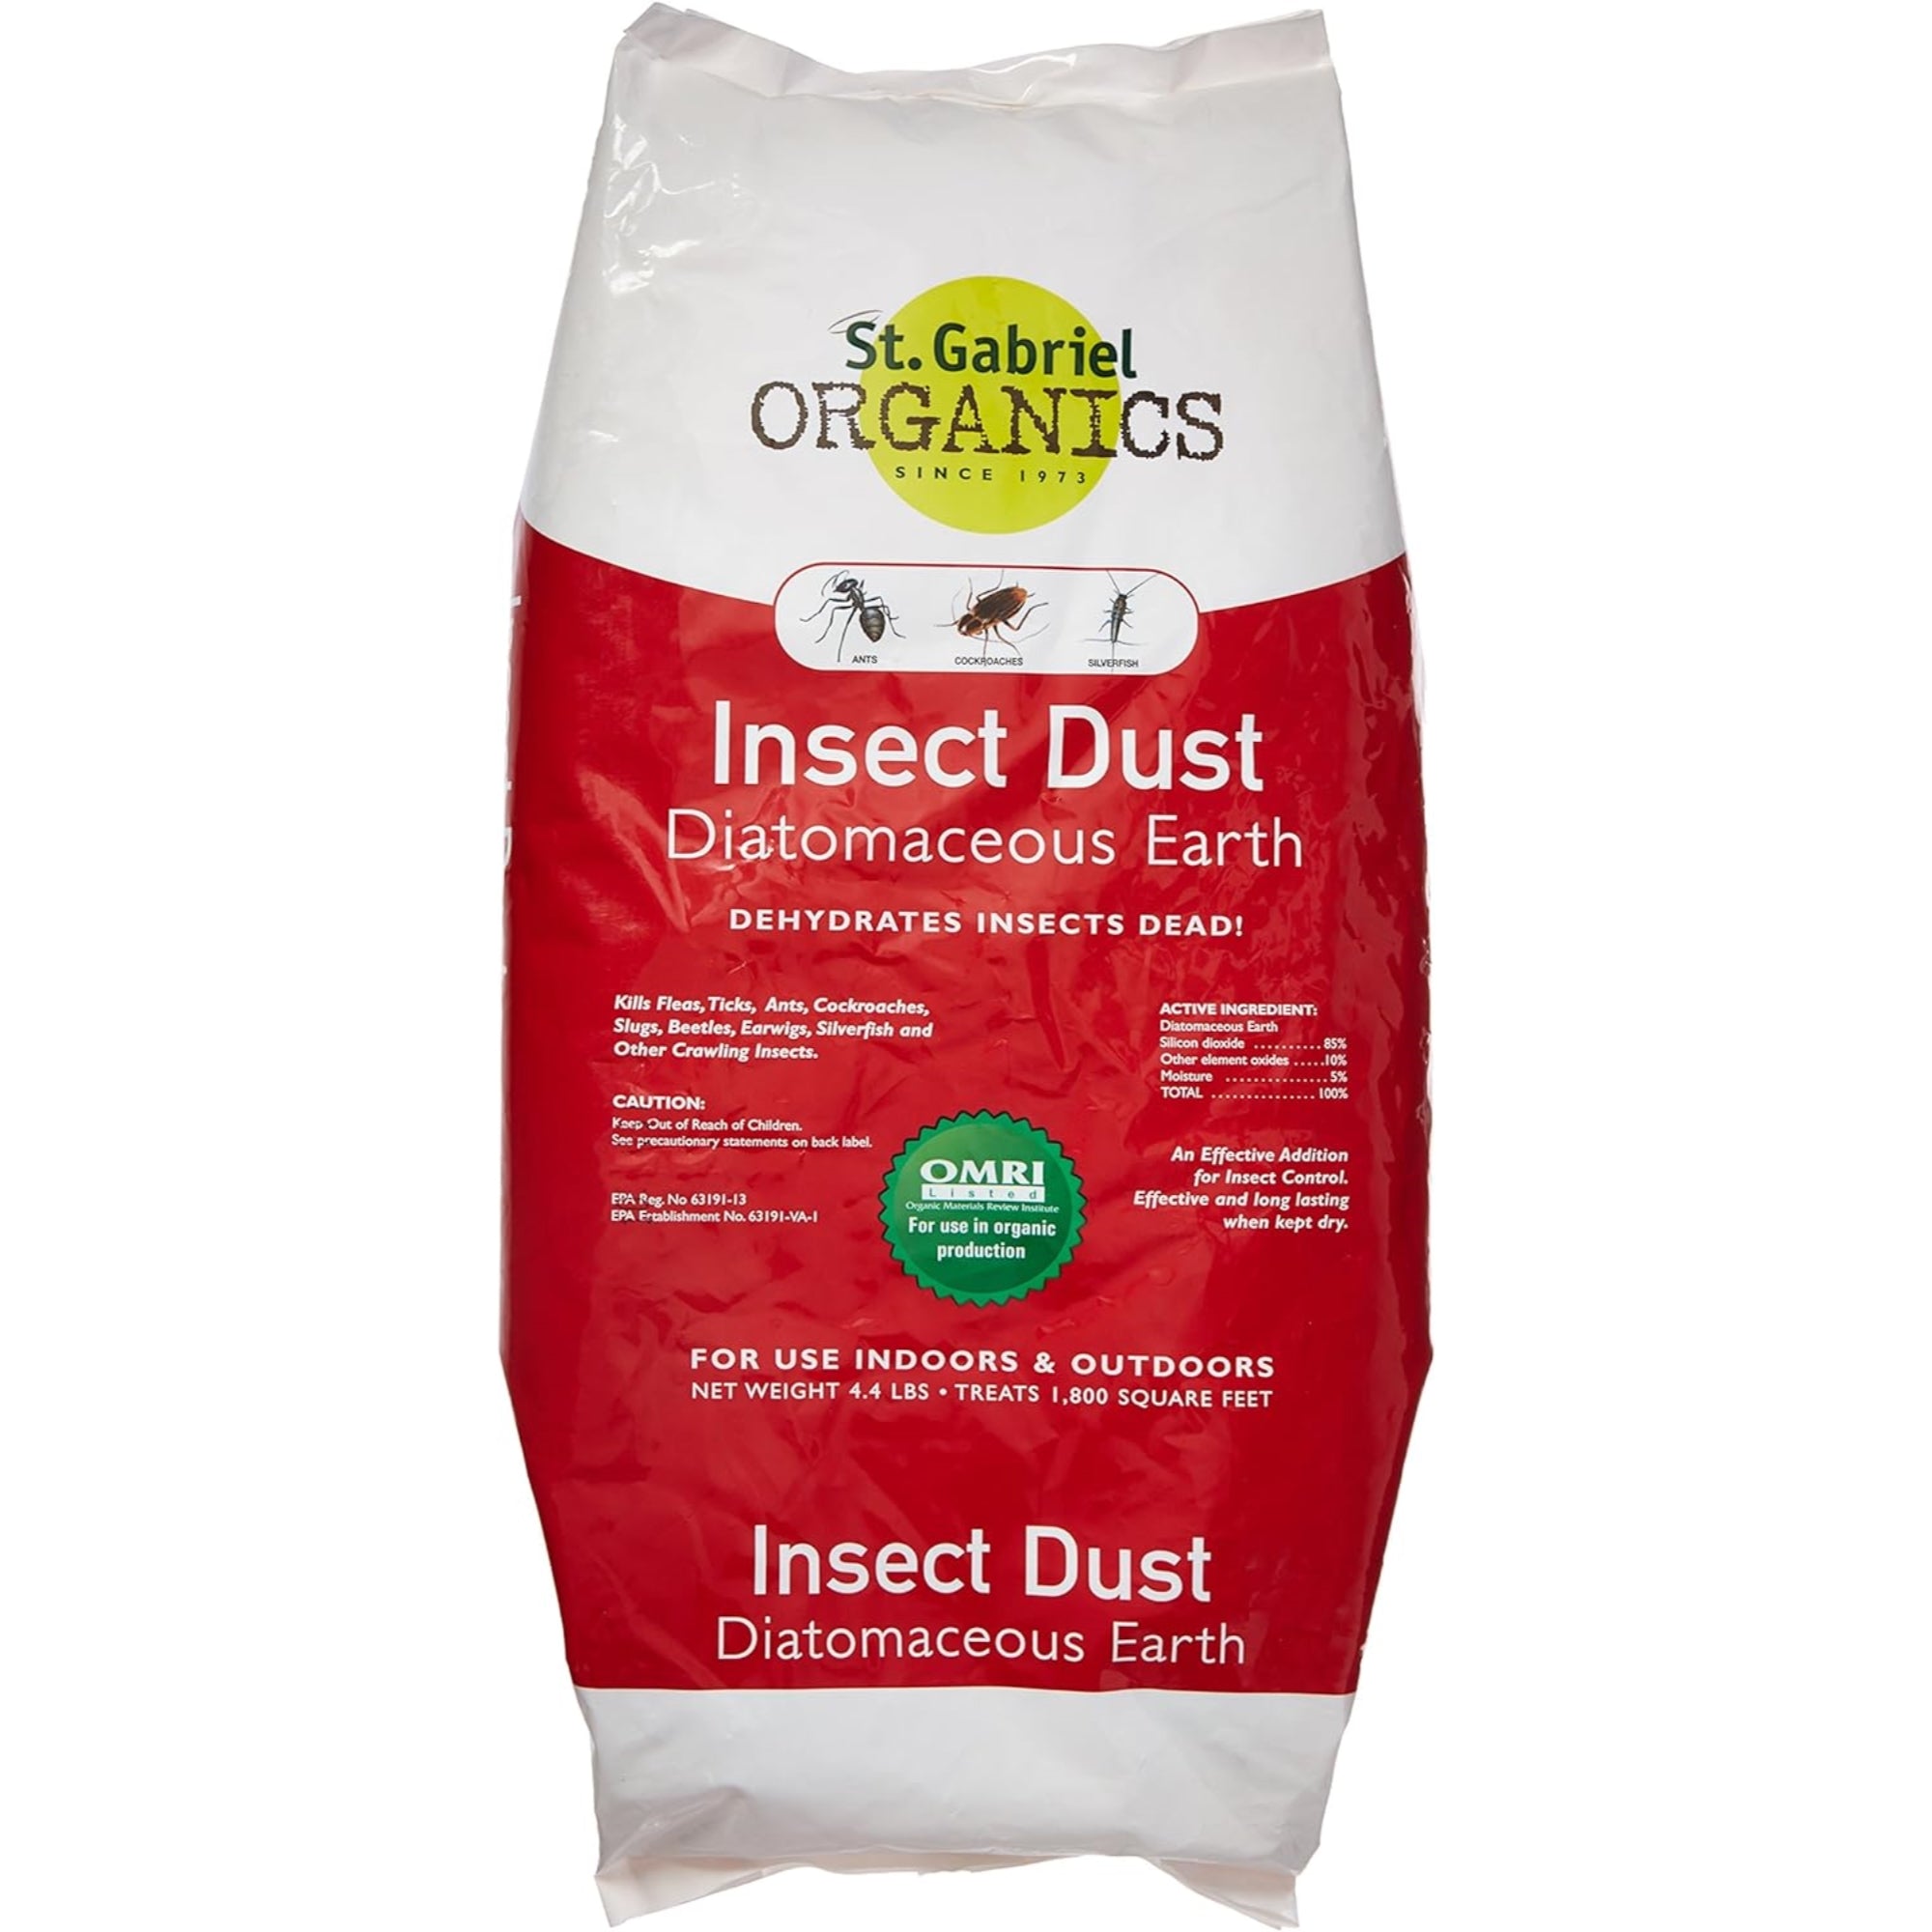 St. Gabriel Organics All Natural Indoor/Outdoor Insect Dust Repellent, 4.4lb Bag